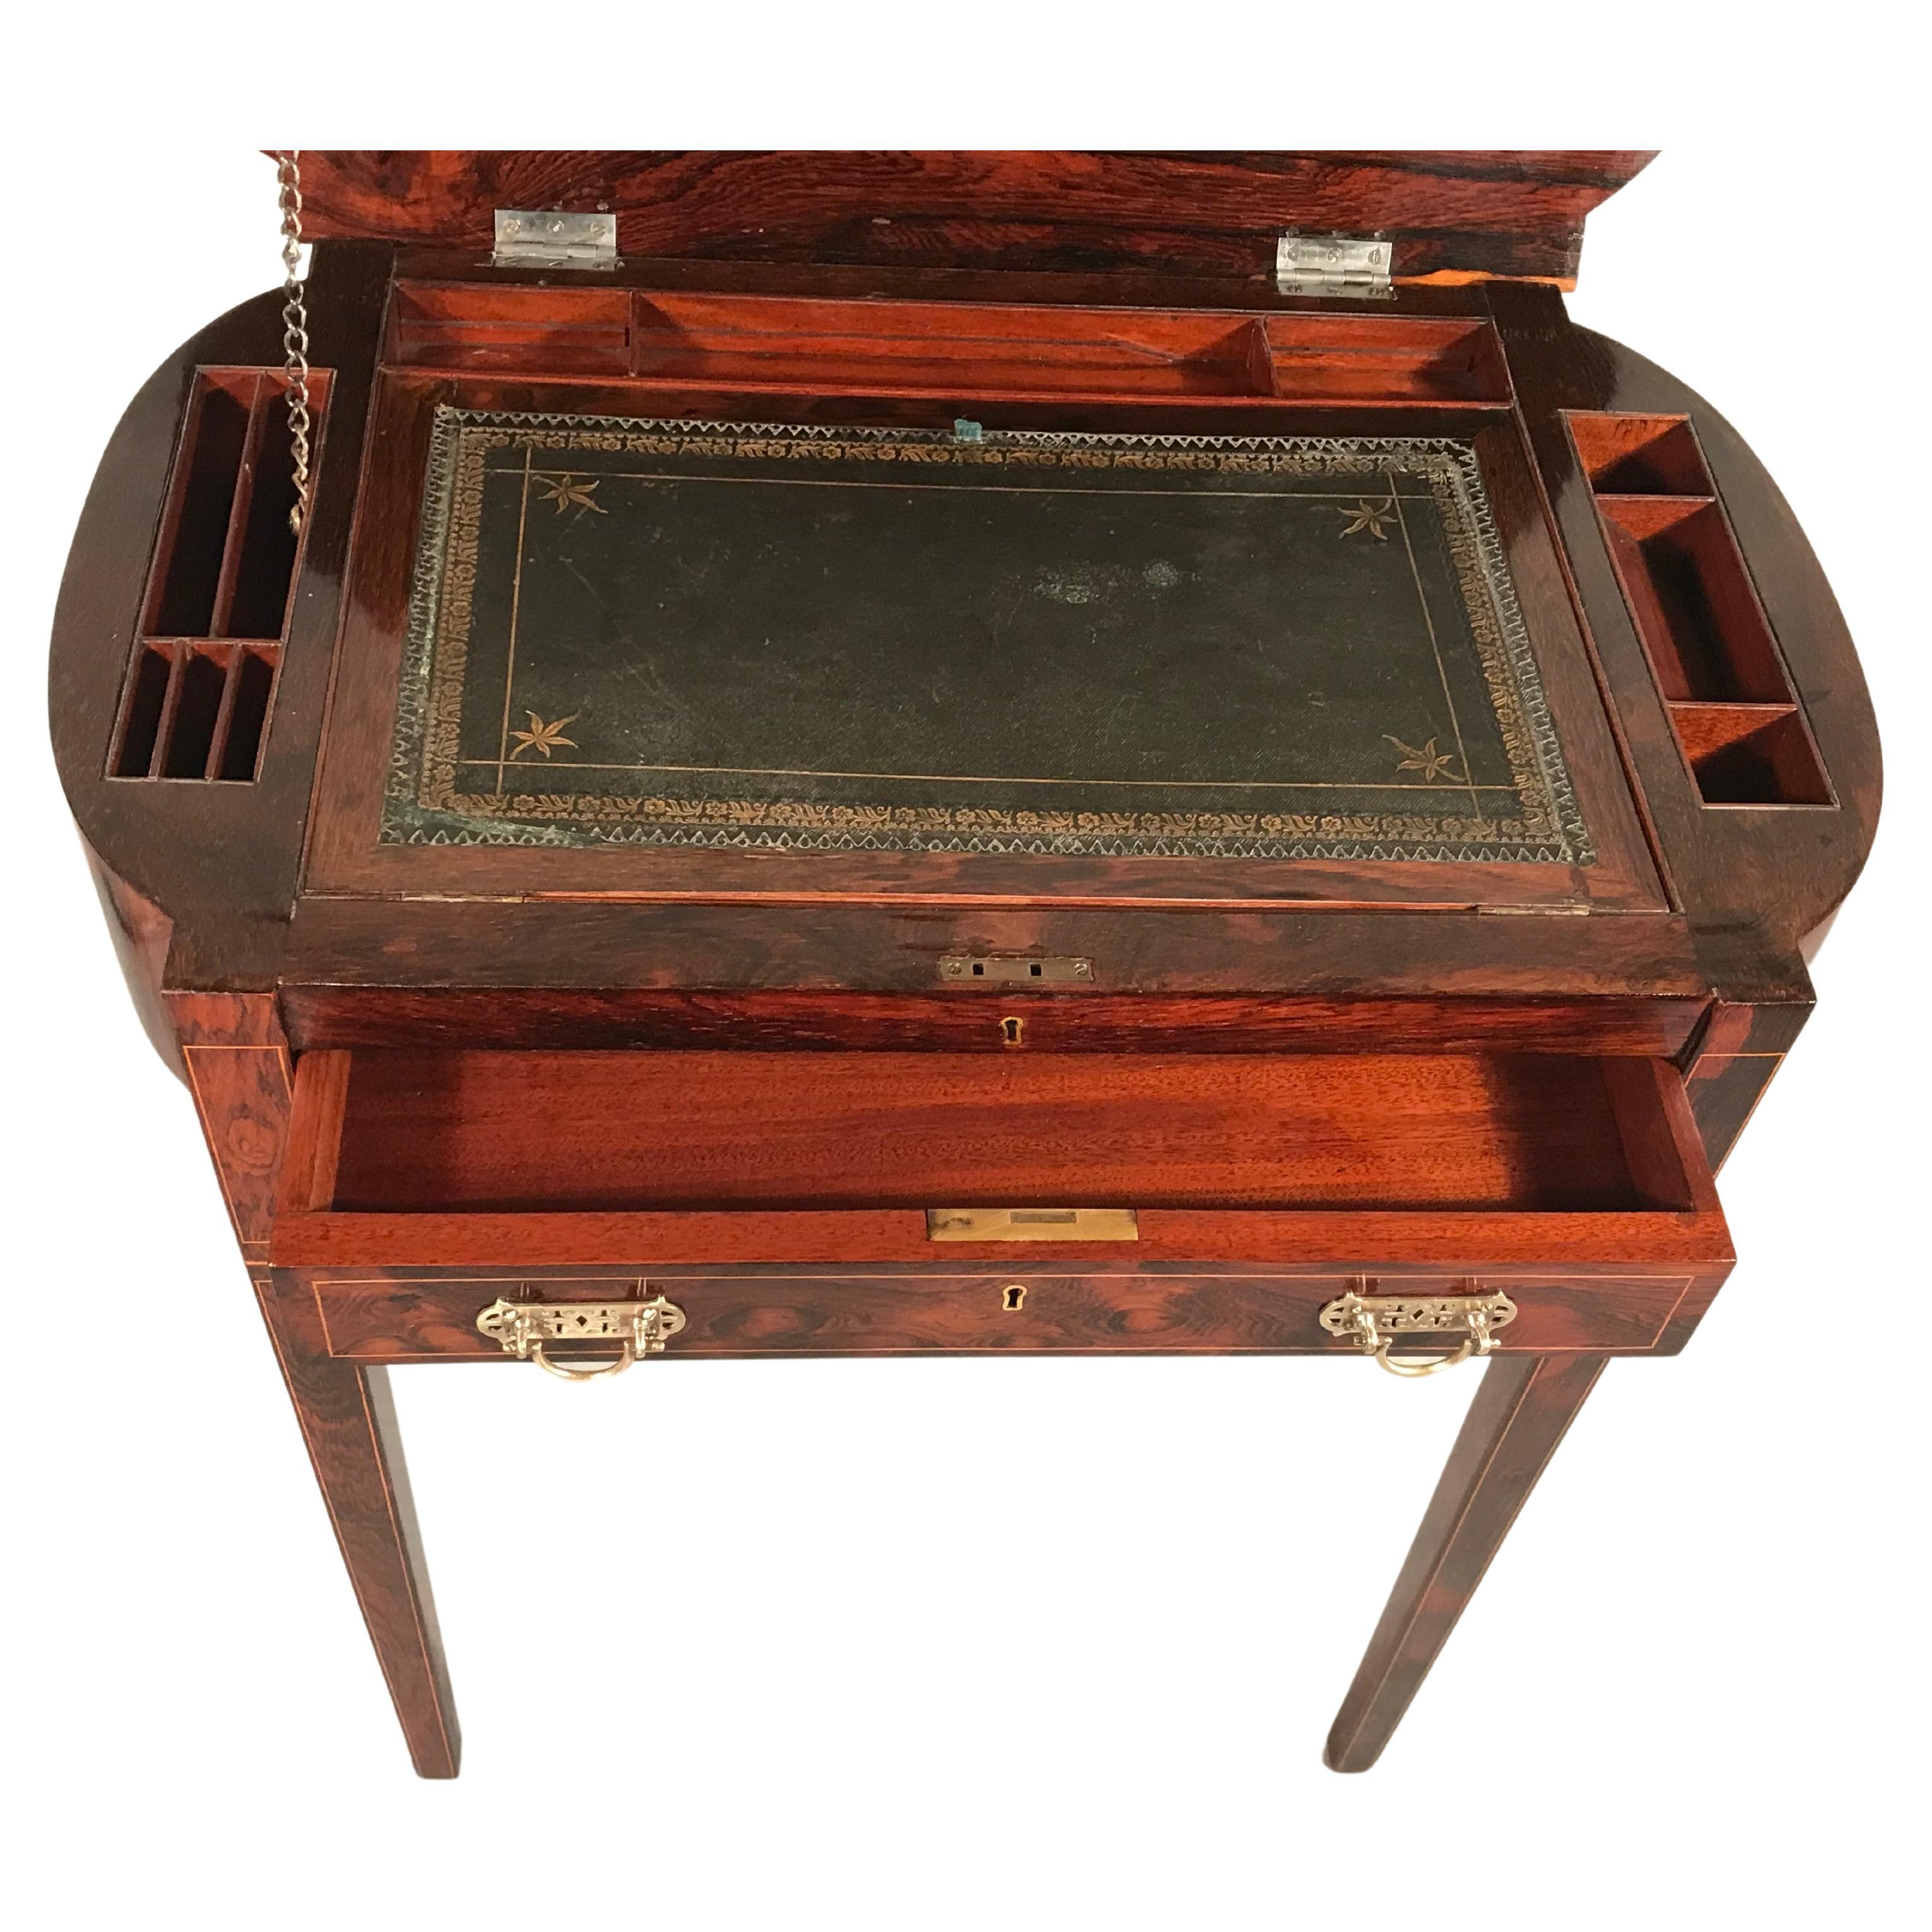 Ce magnifique petit bureau de dame provient d'Angleterre et a été fabriqué pendant la période Regency, vers 1830. L'extérieur du bureau est recouvert d'un joli placage de bois de roi. Il est doté d'un couvercle rabattable qui révèle une surface